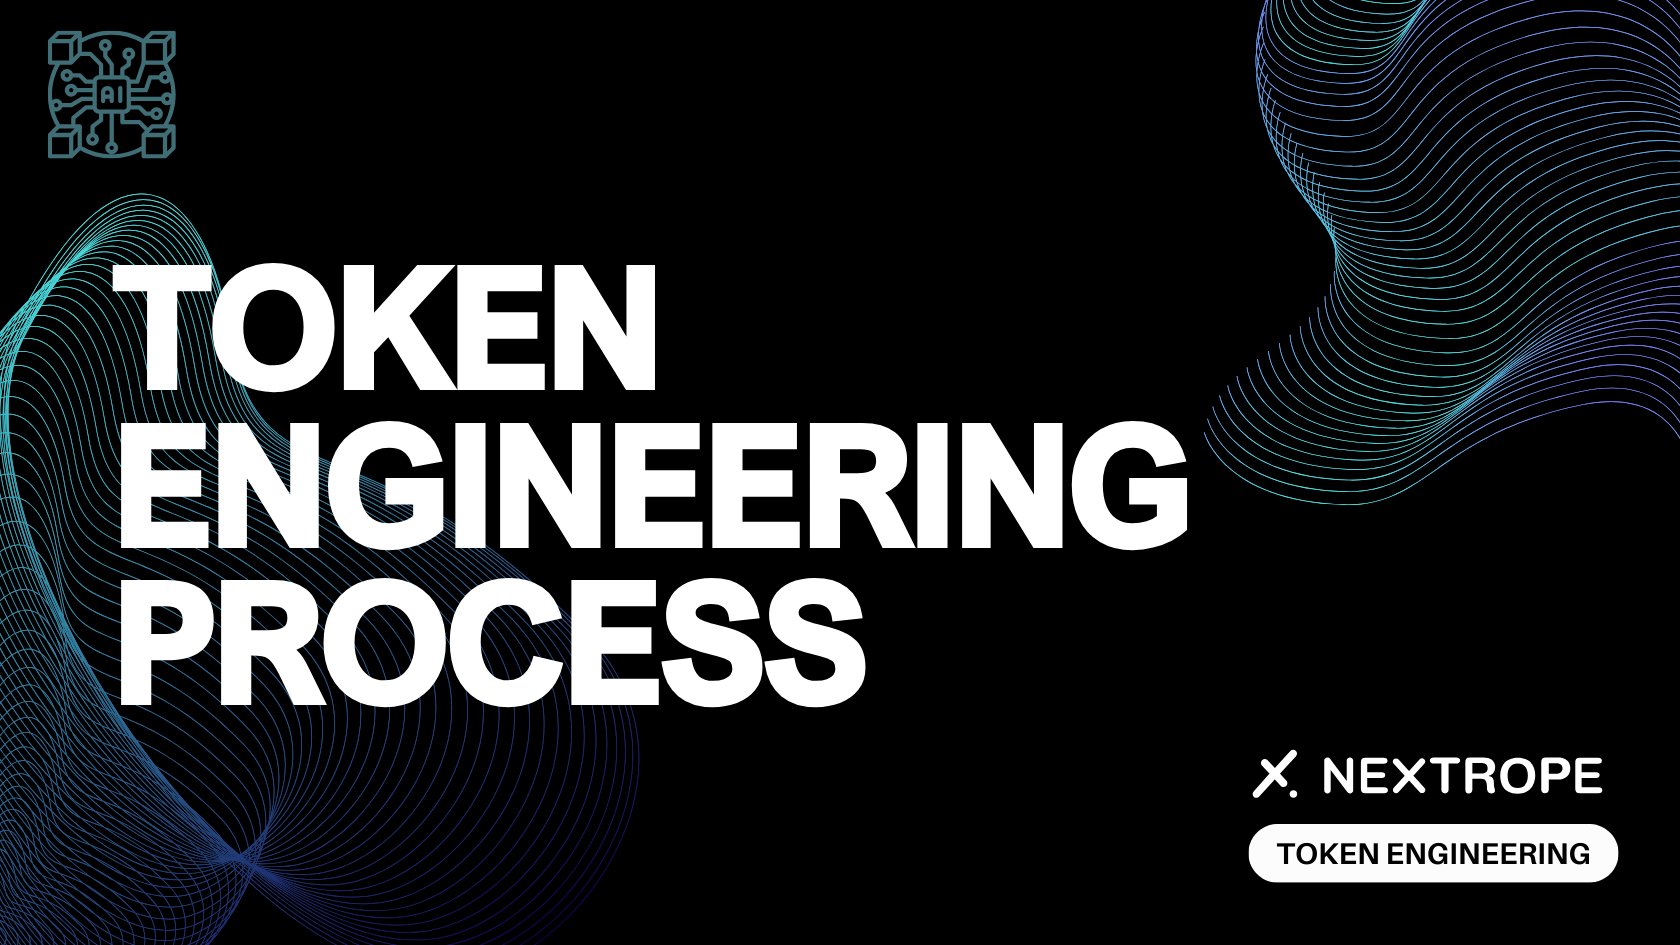 Token Engineering Process